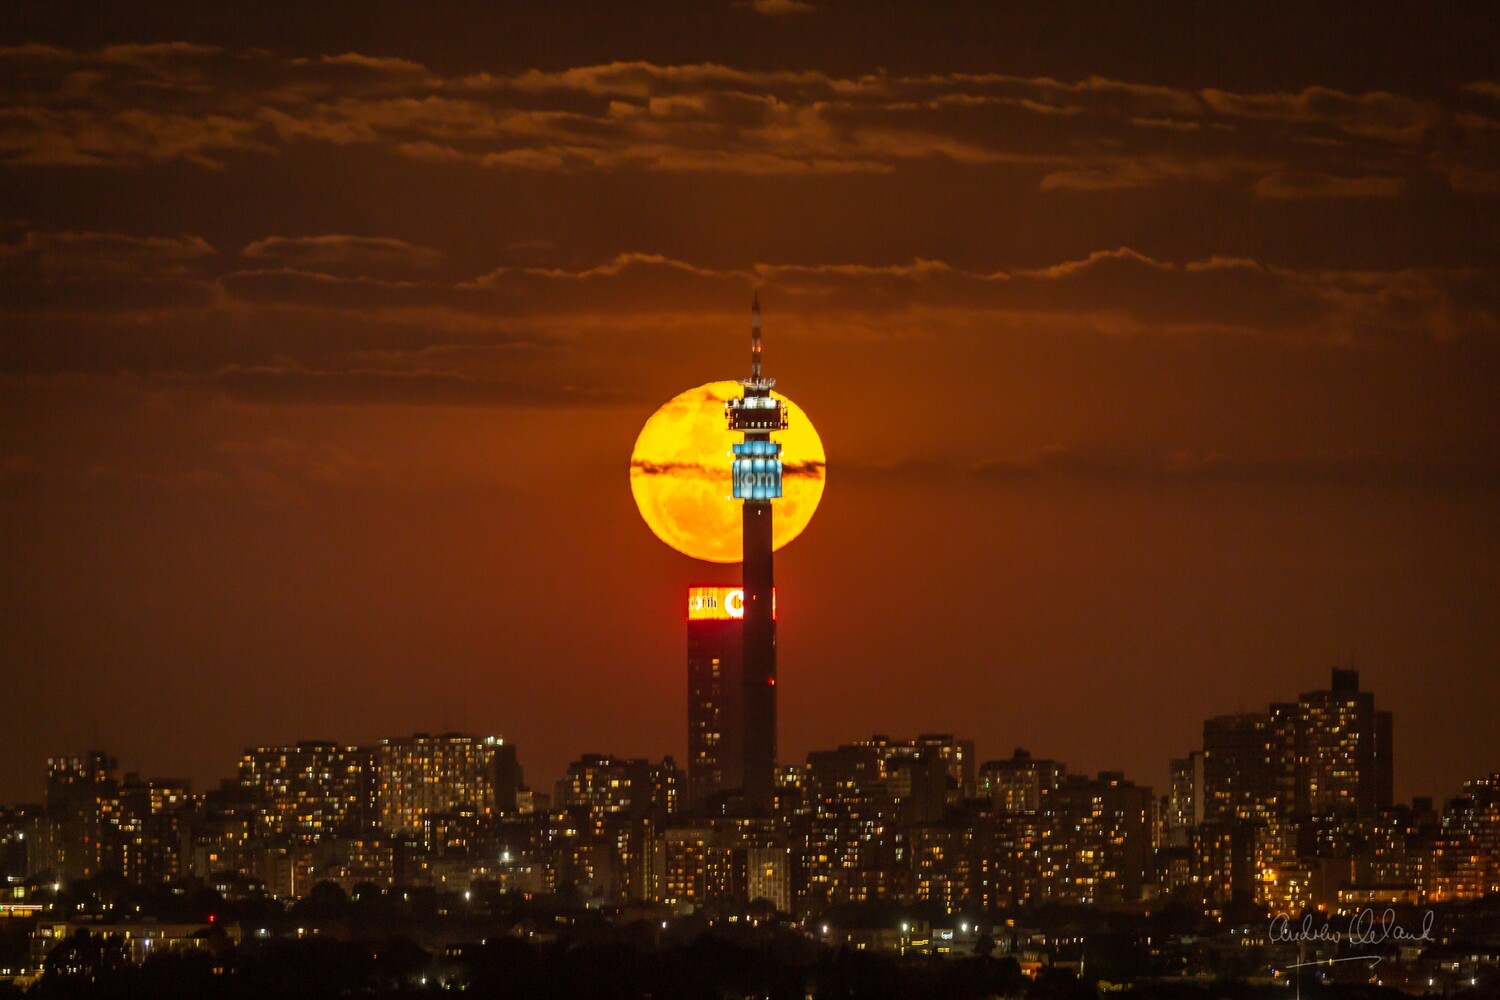 Johannesburg Full Moon, June 2021